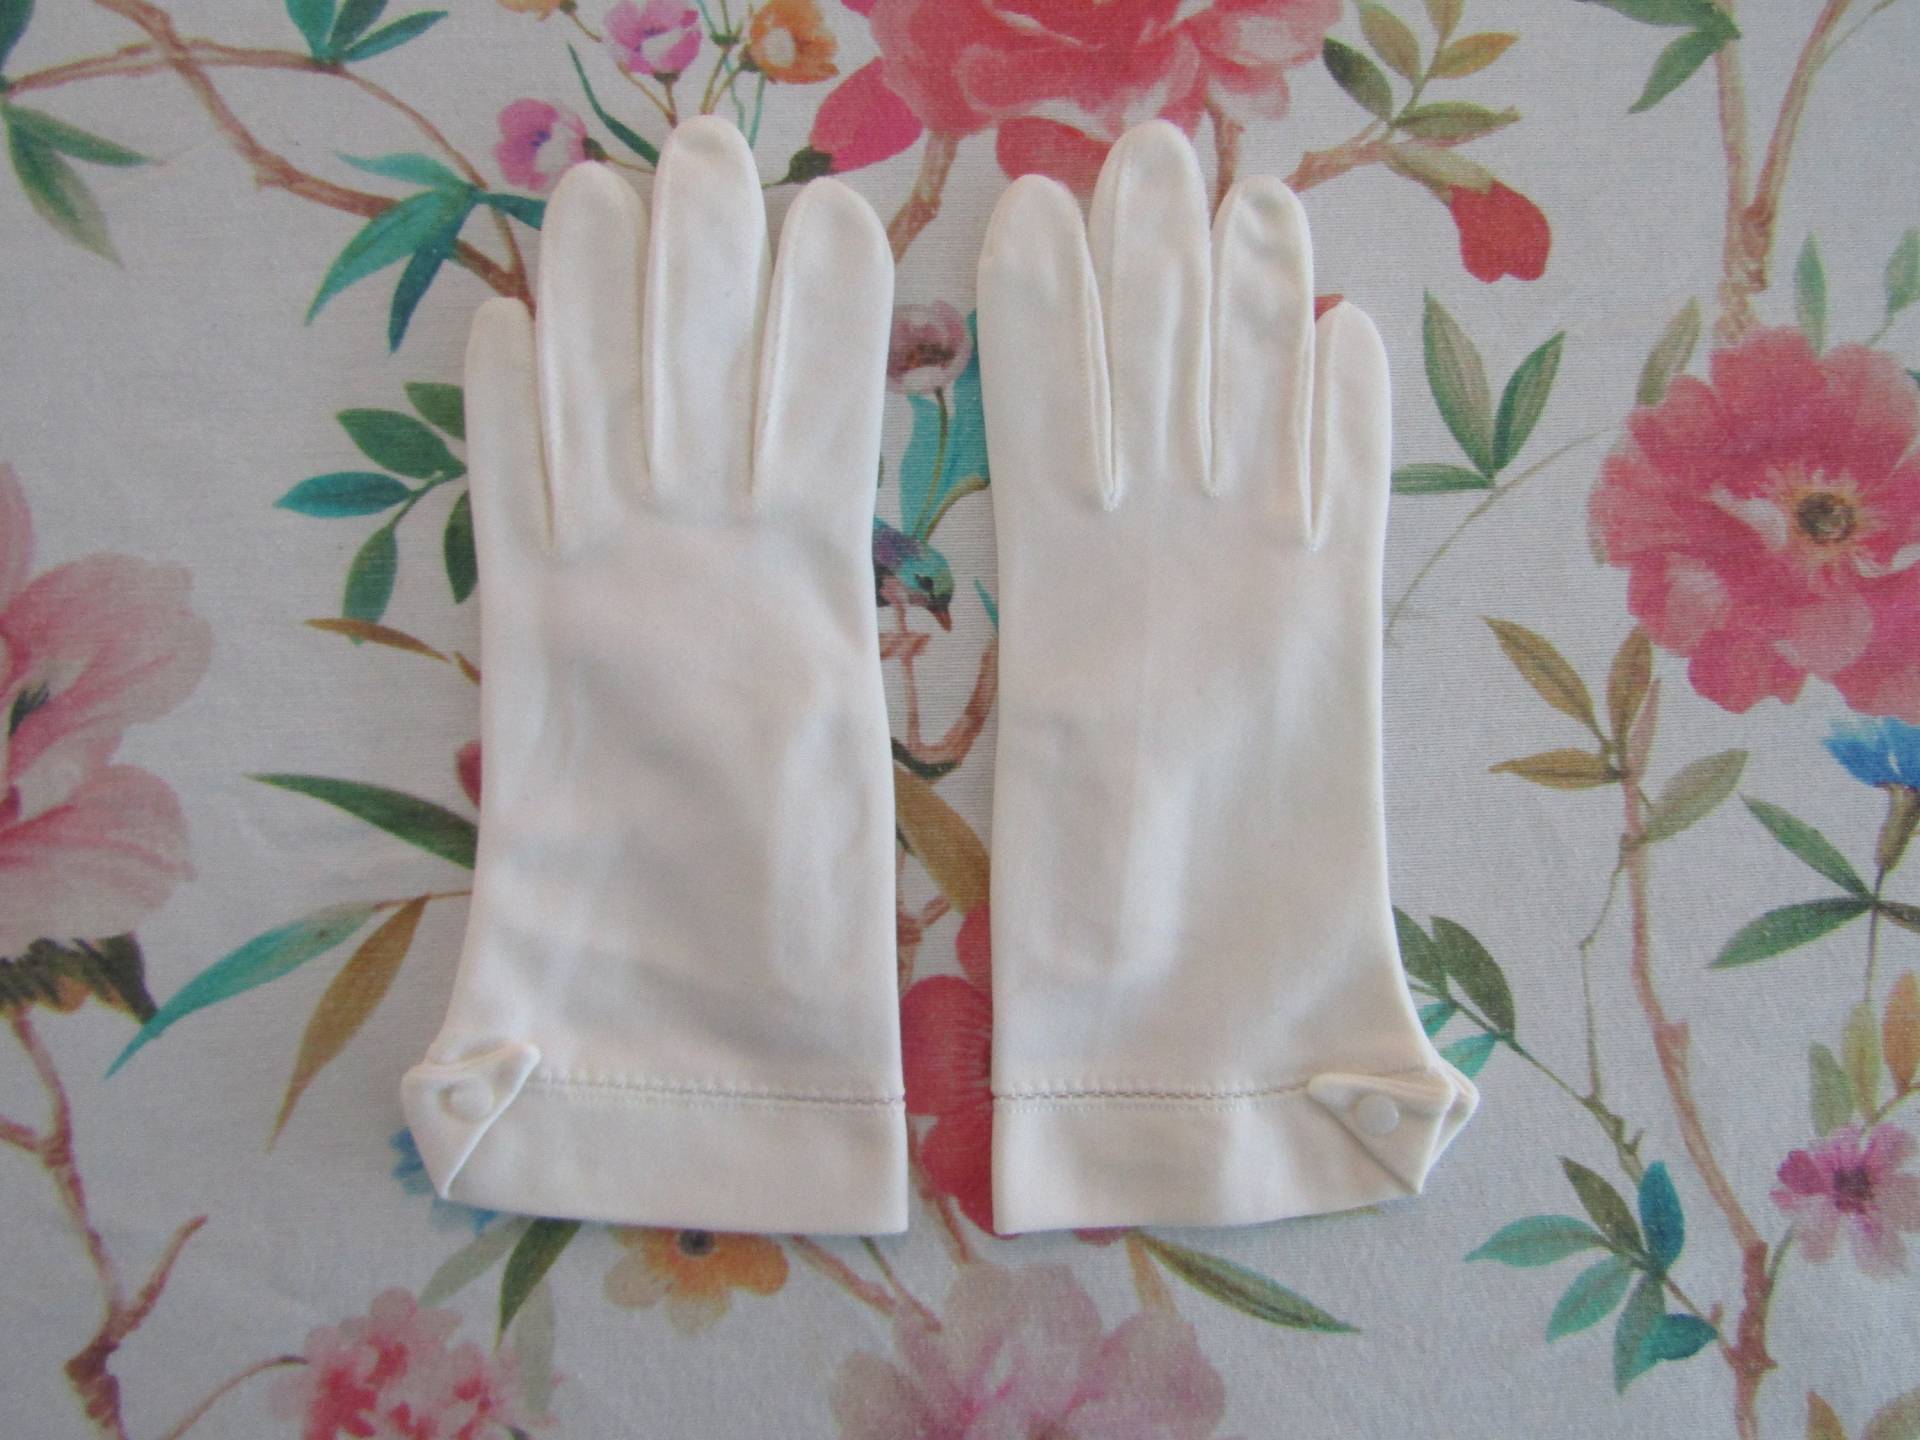 Vintage Weiße Nylon Abendhandschuhe Mit Knöpfen-20cm Armbandlänge-Größe 6 1/2-Auction #12740322 von PrimaMona